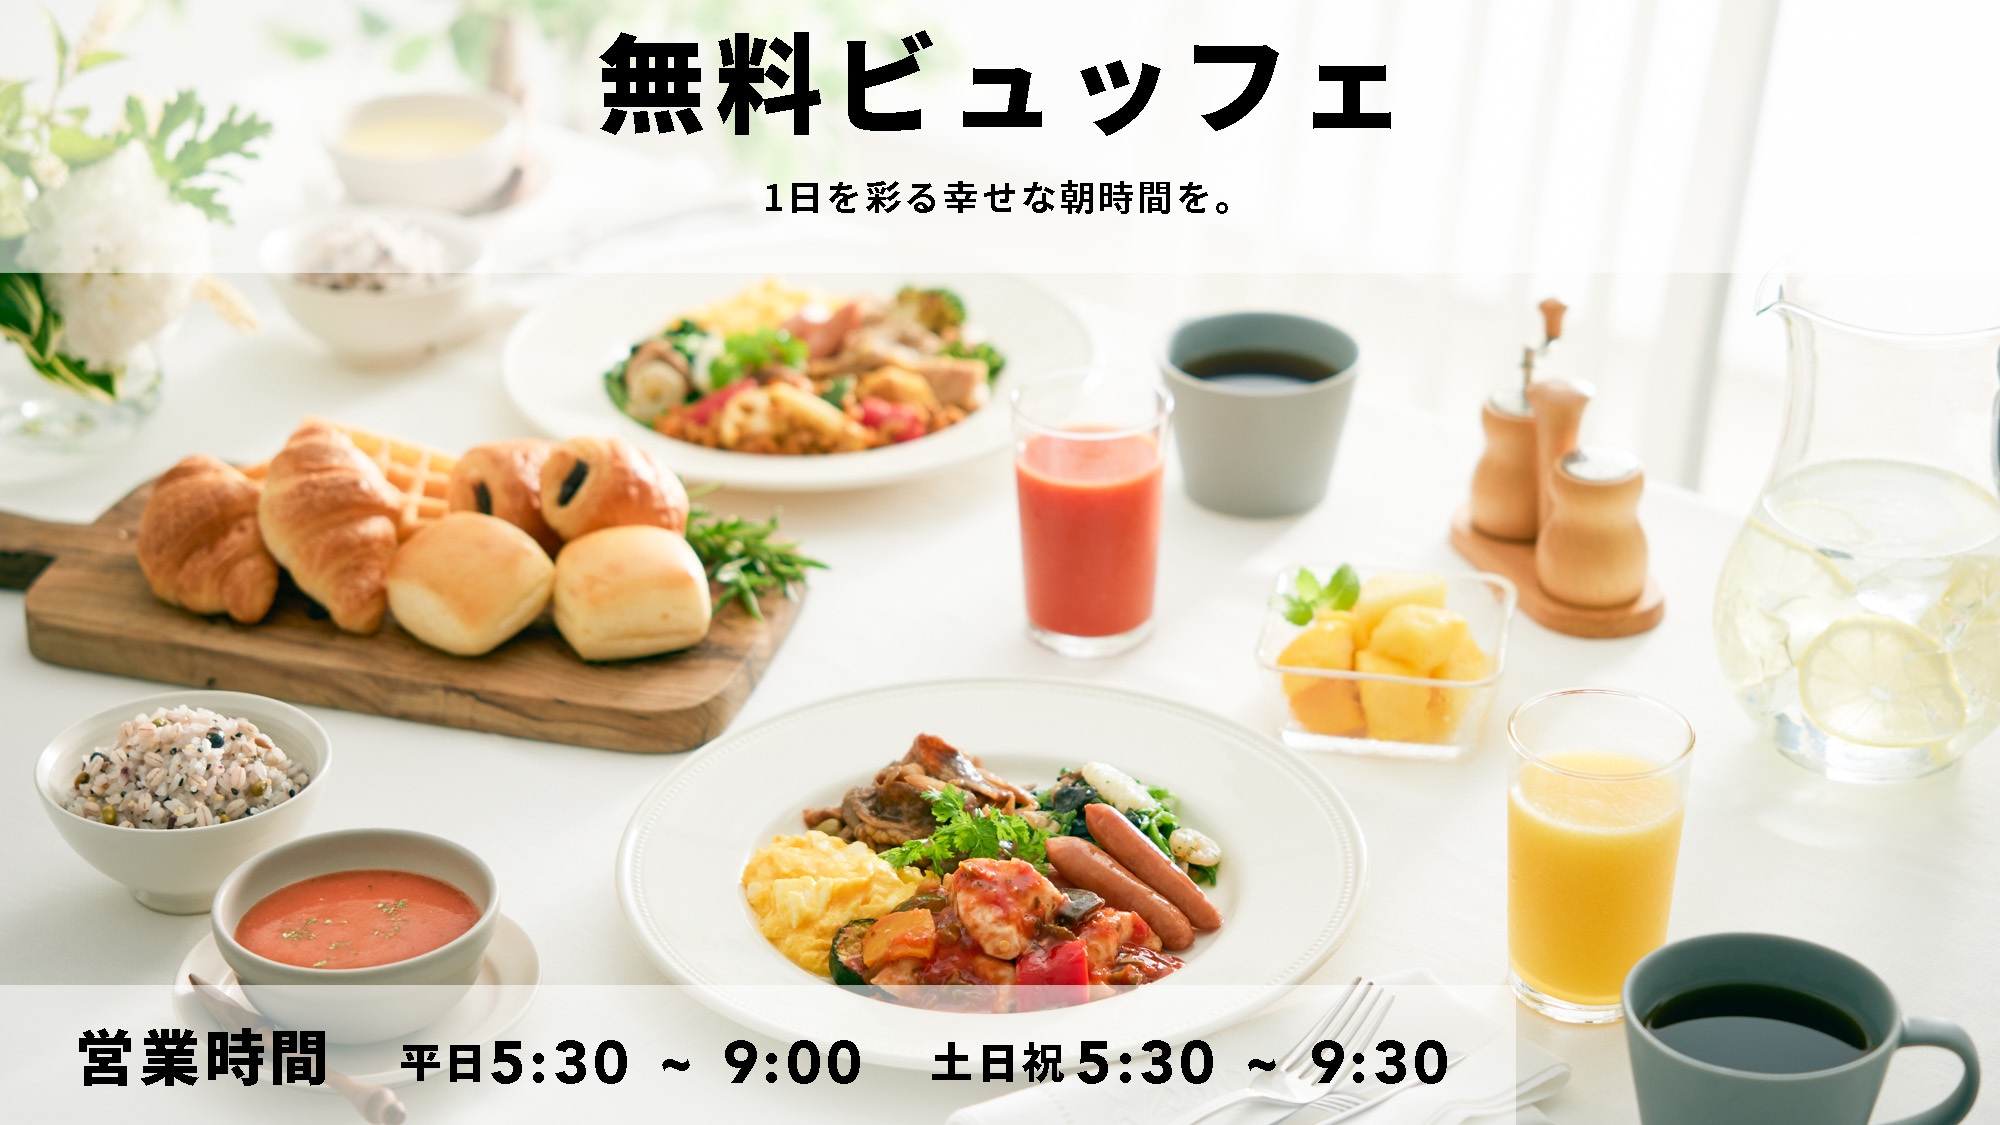 自由きままな Comfort stay ◆彩り豊かな朝食無料サービス◆◆